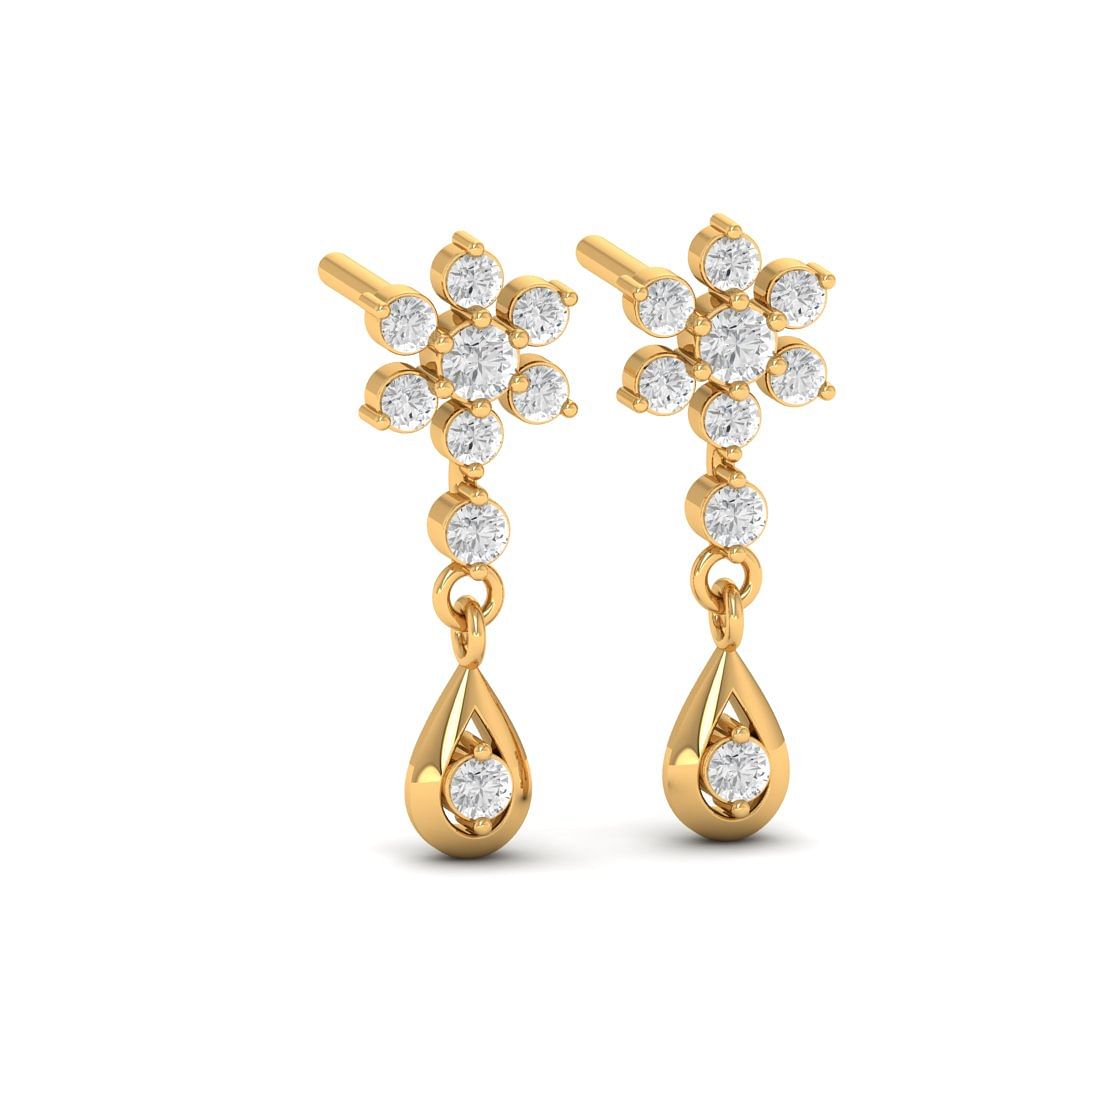 14k Yellow Gold Eline Diamond Earrings For Her